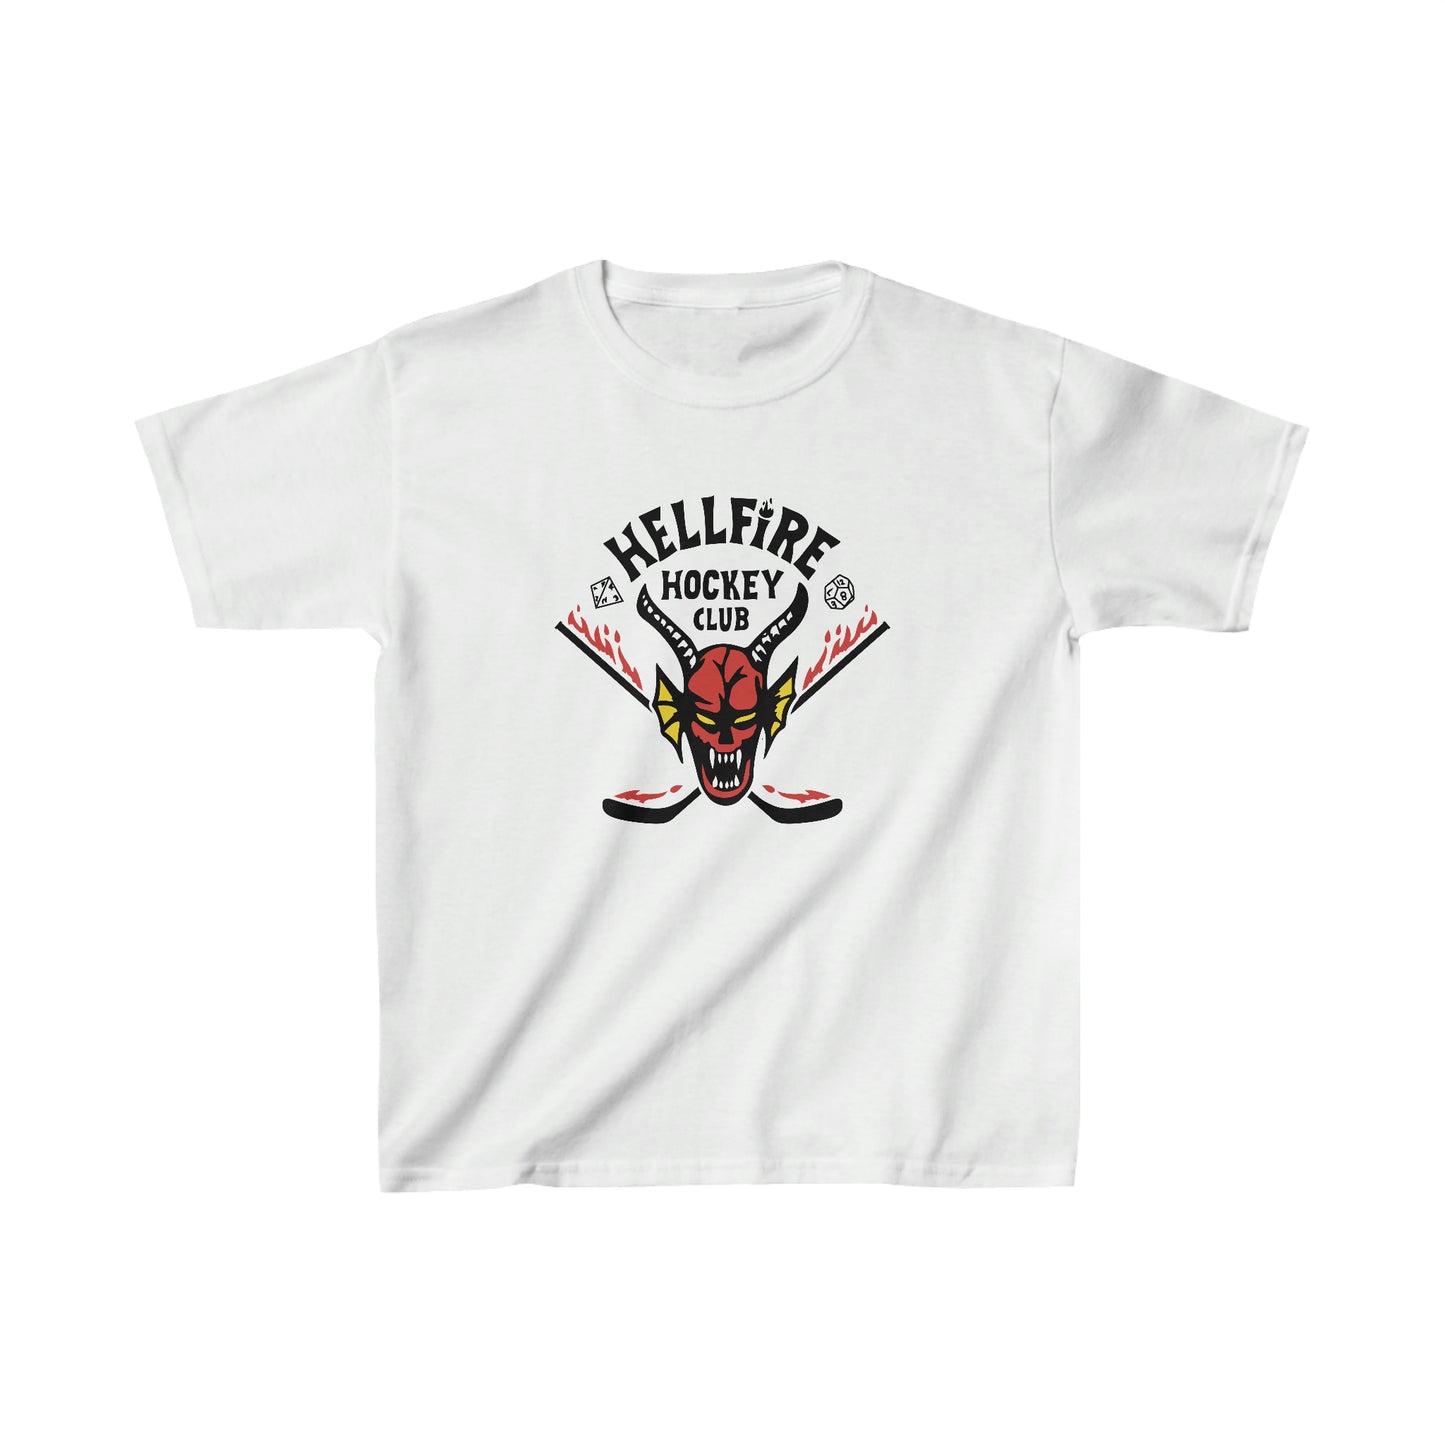 Hellfire Hockey Club - Kids Shirt